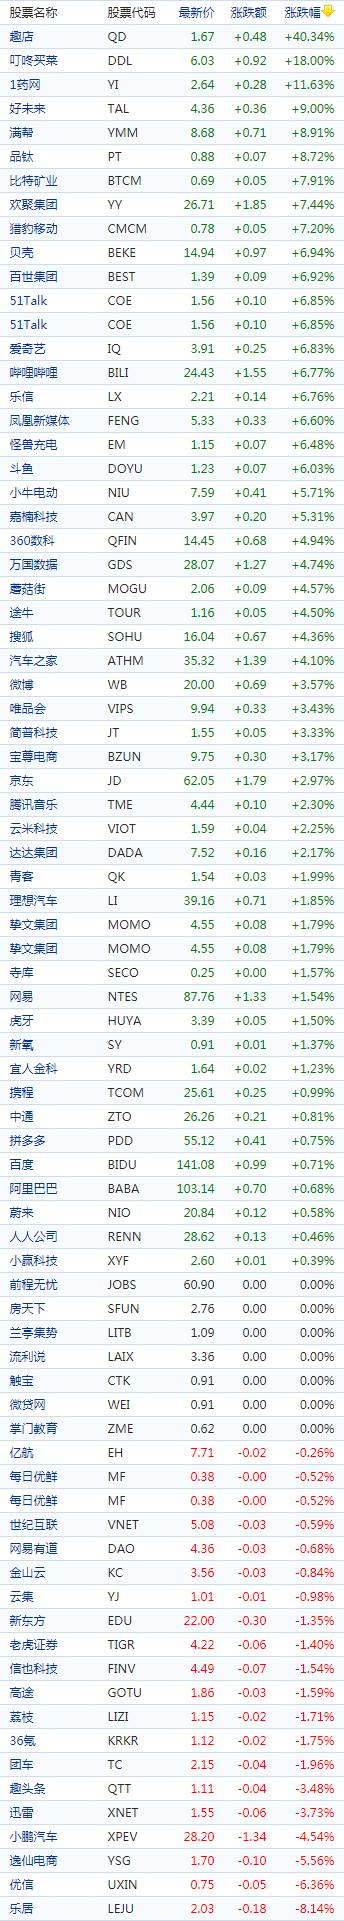 中国概念股多数走高，尚城数科IPO次日飙升71％、趣店涨逾40%